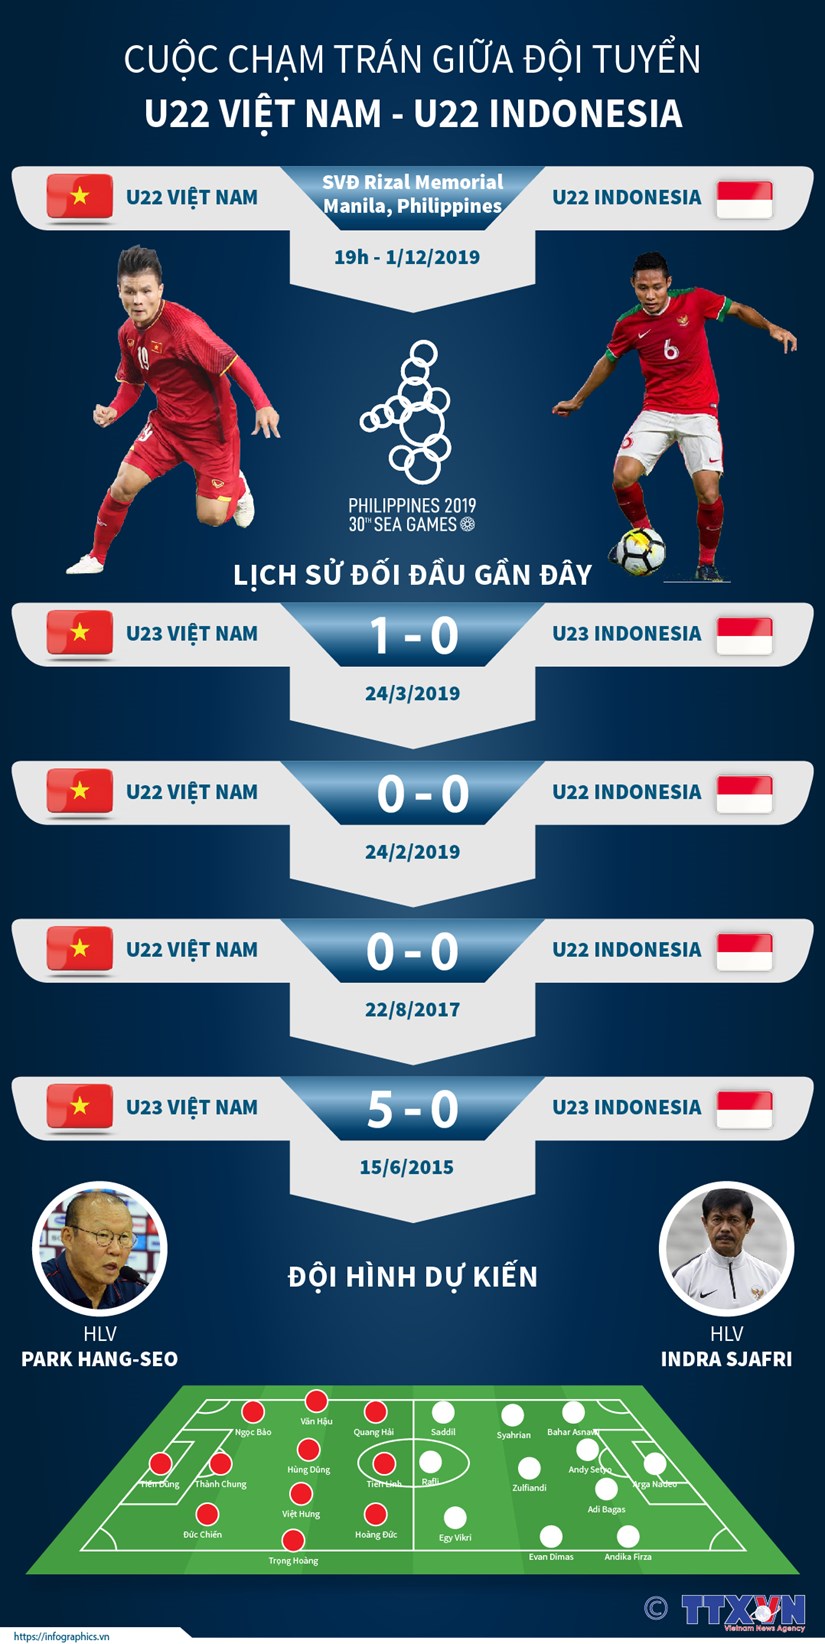 [Infographics] Cuoc cham tran giua U22 Viet Nam-U22 Indonesia hinh anh 1